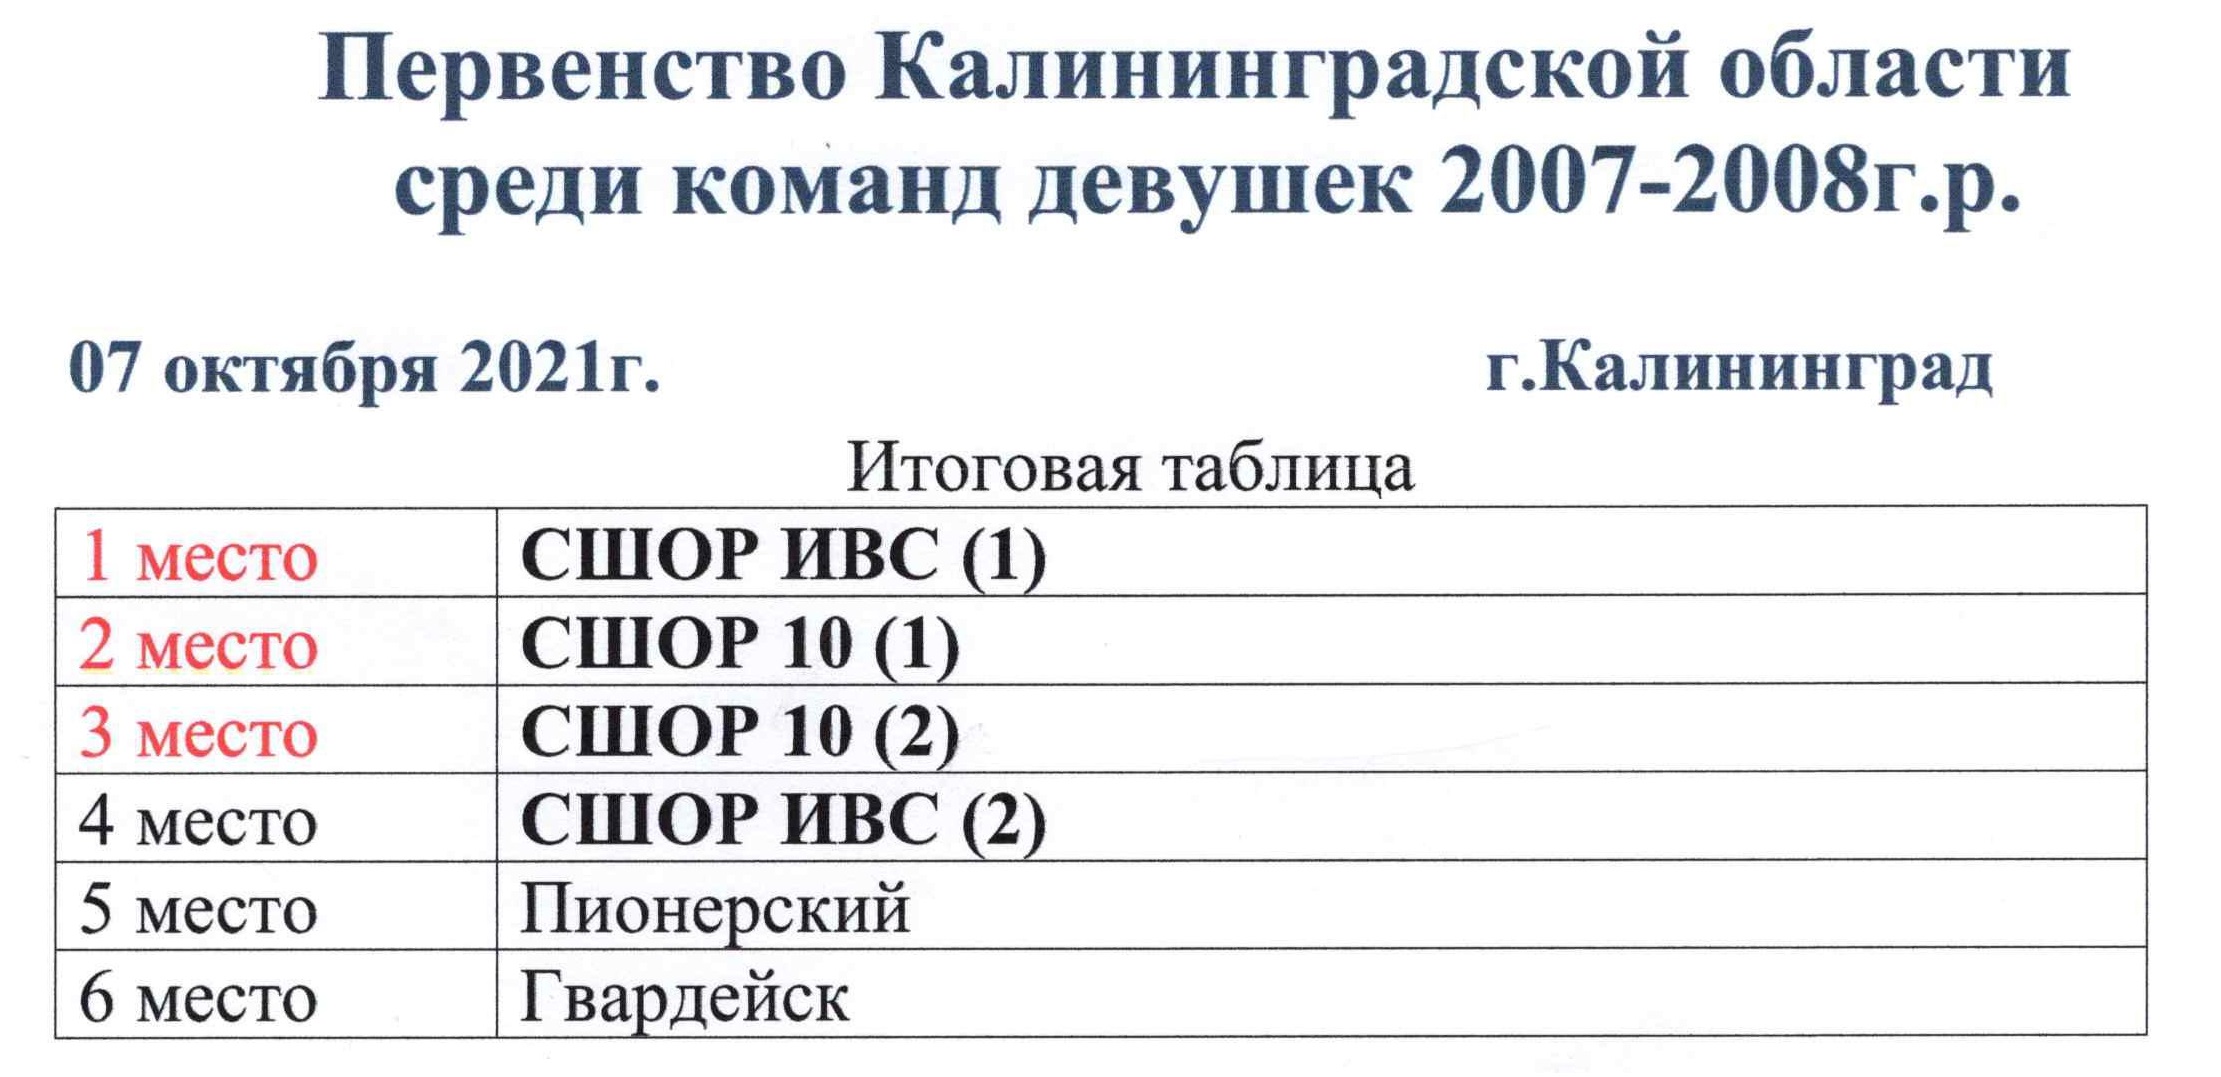 Результаты II тура Первенства области среди девушек 2007-2008 гг.р.